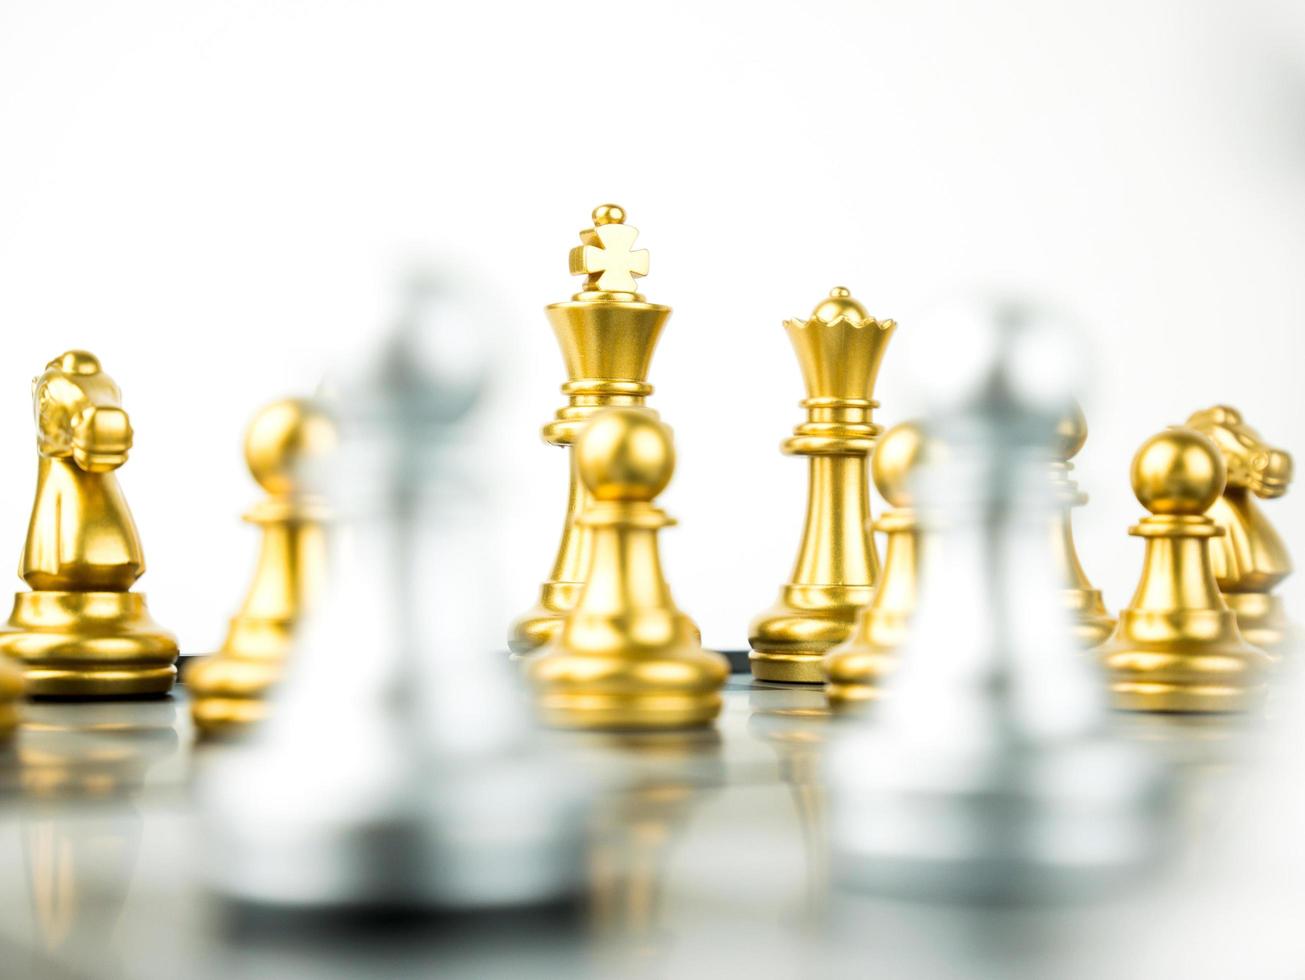 Gold und Silber König und Ritter des Schachs Setup auf weißem Hintergrund. Führungs- und Teamwork-Konzept für den Erfolg. Schachkonzept rette den König und rette die Strategie foto